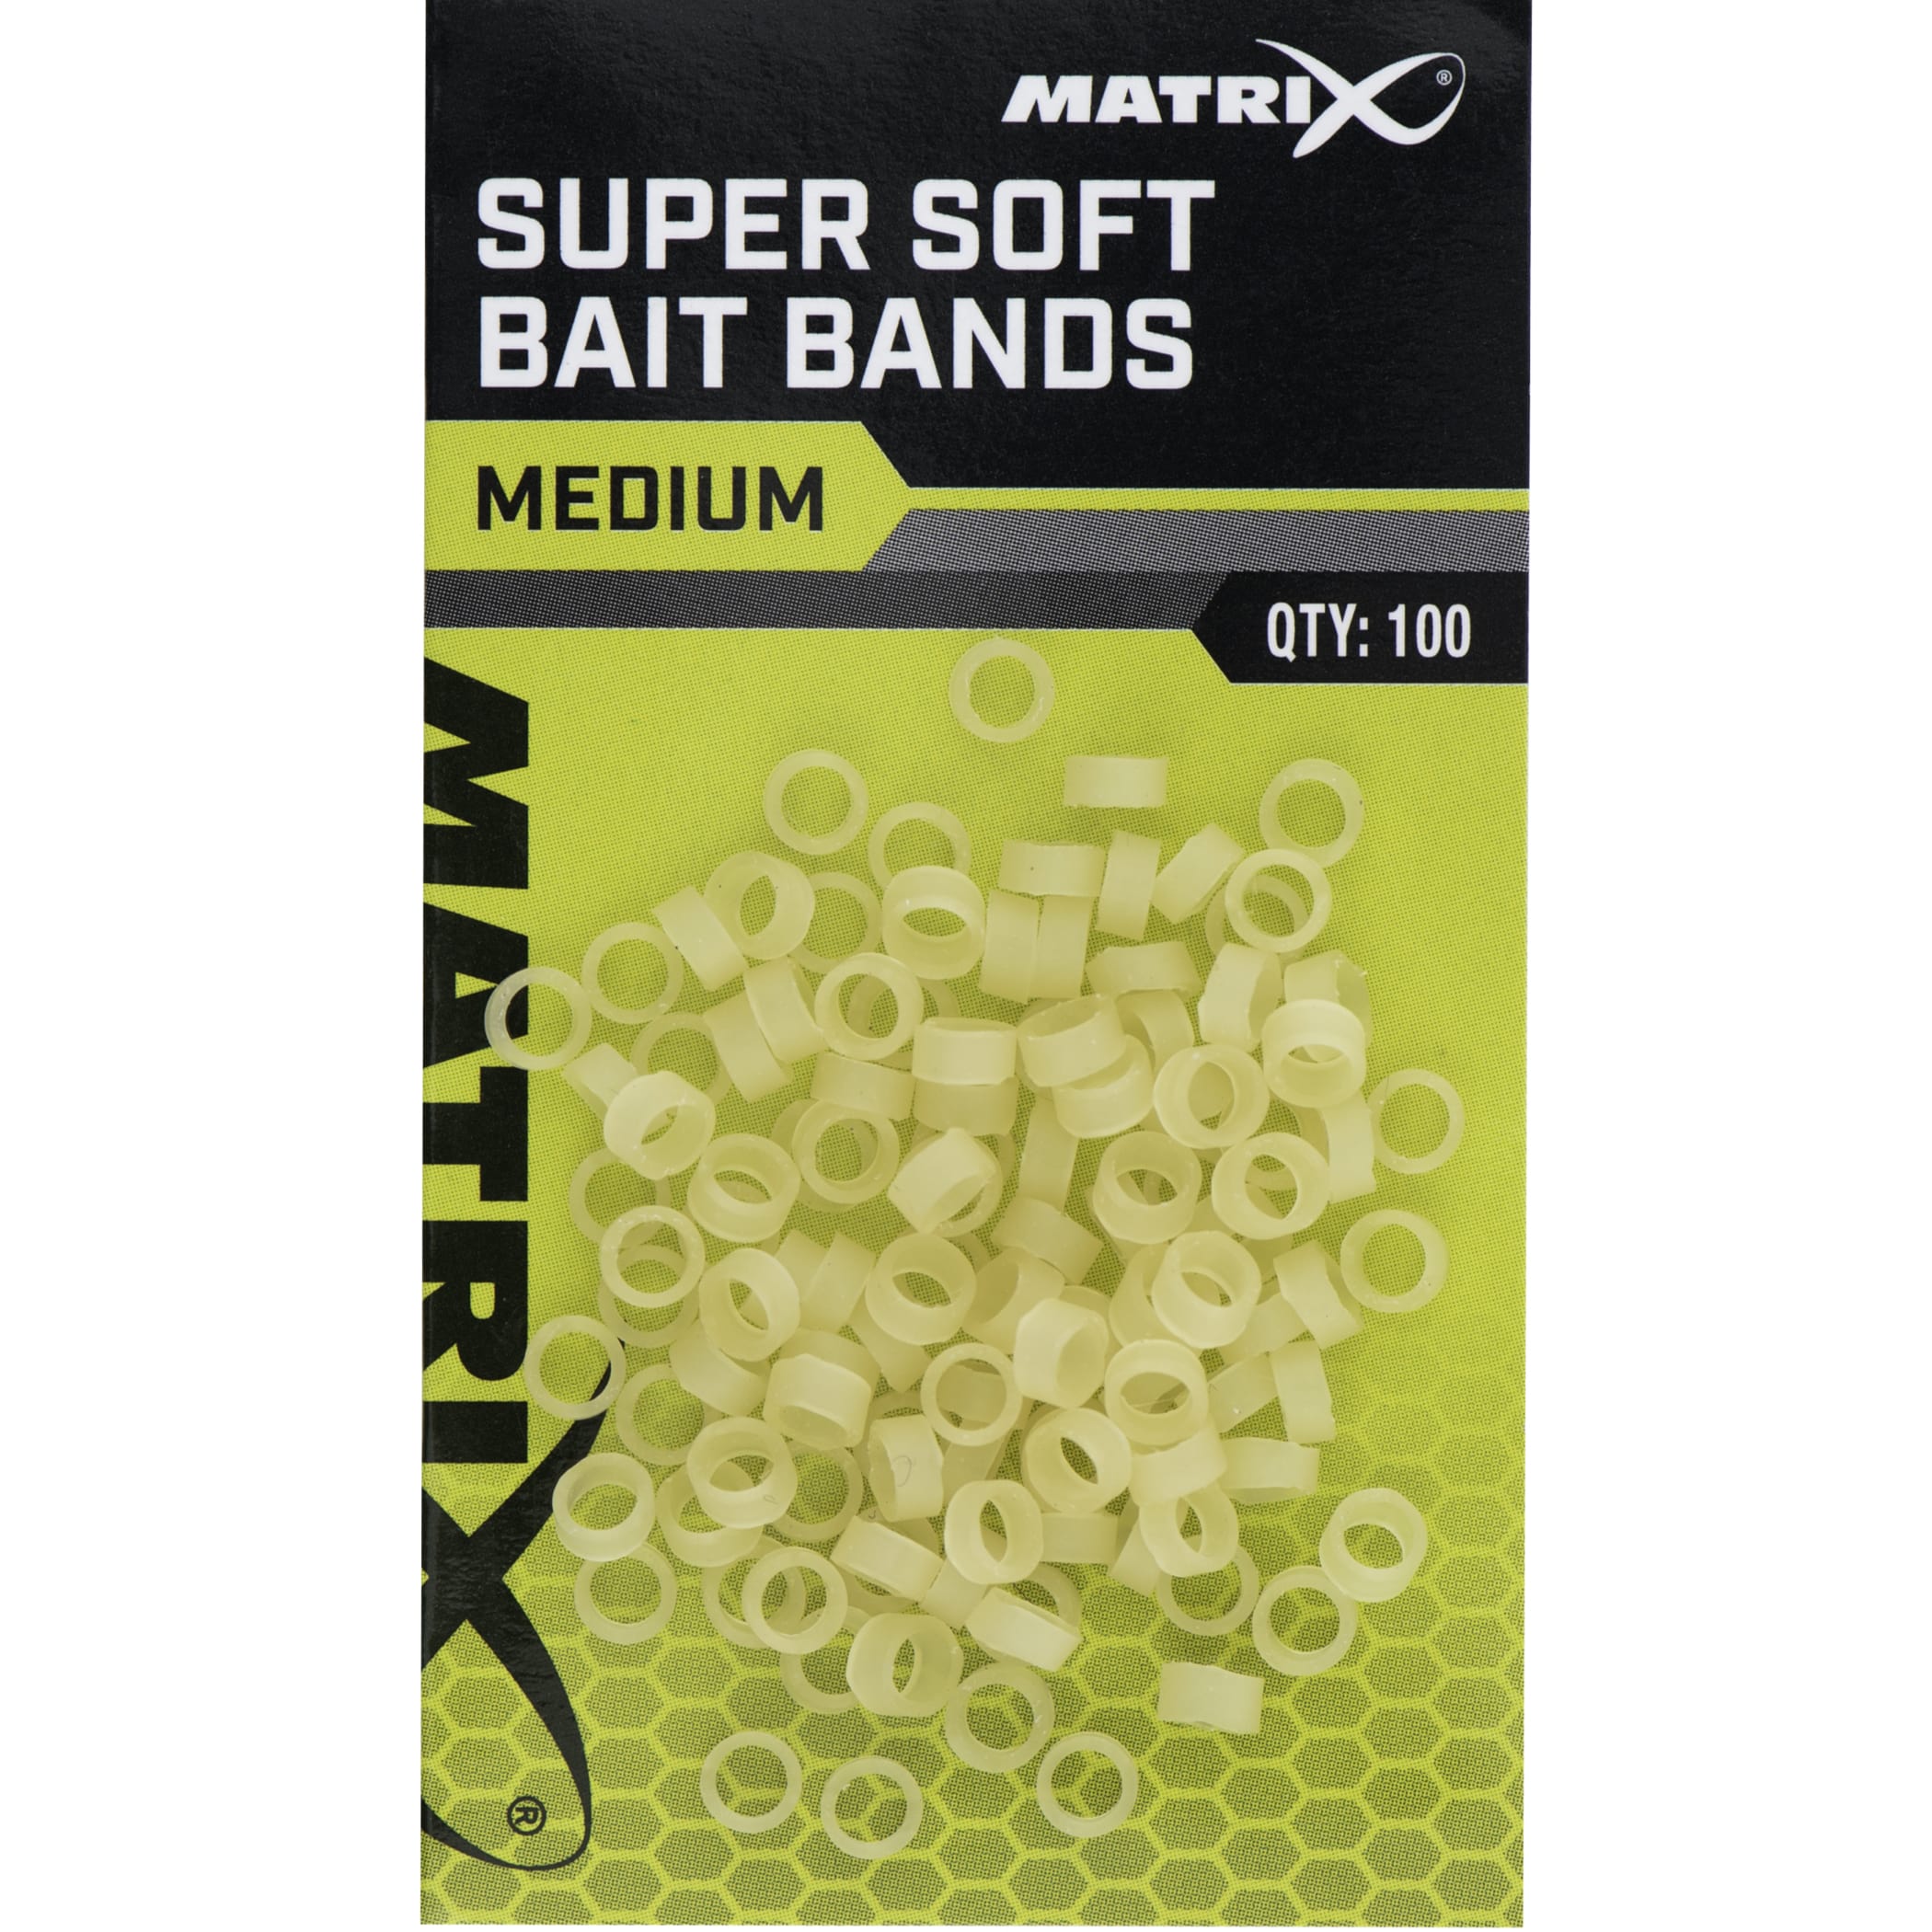 matrix super soft bait bands medium